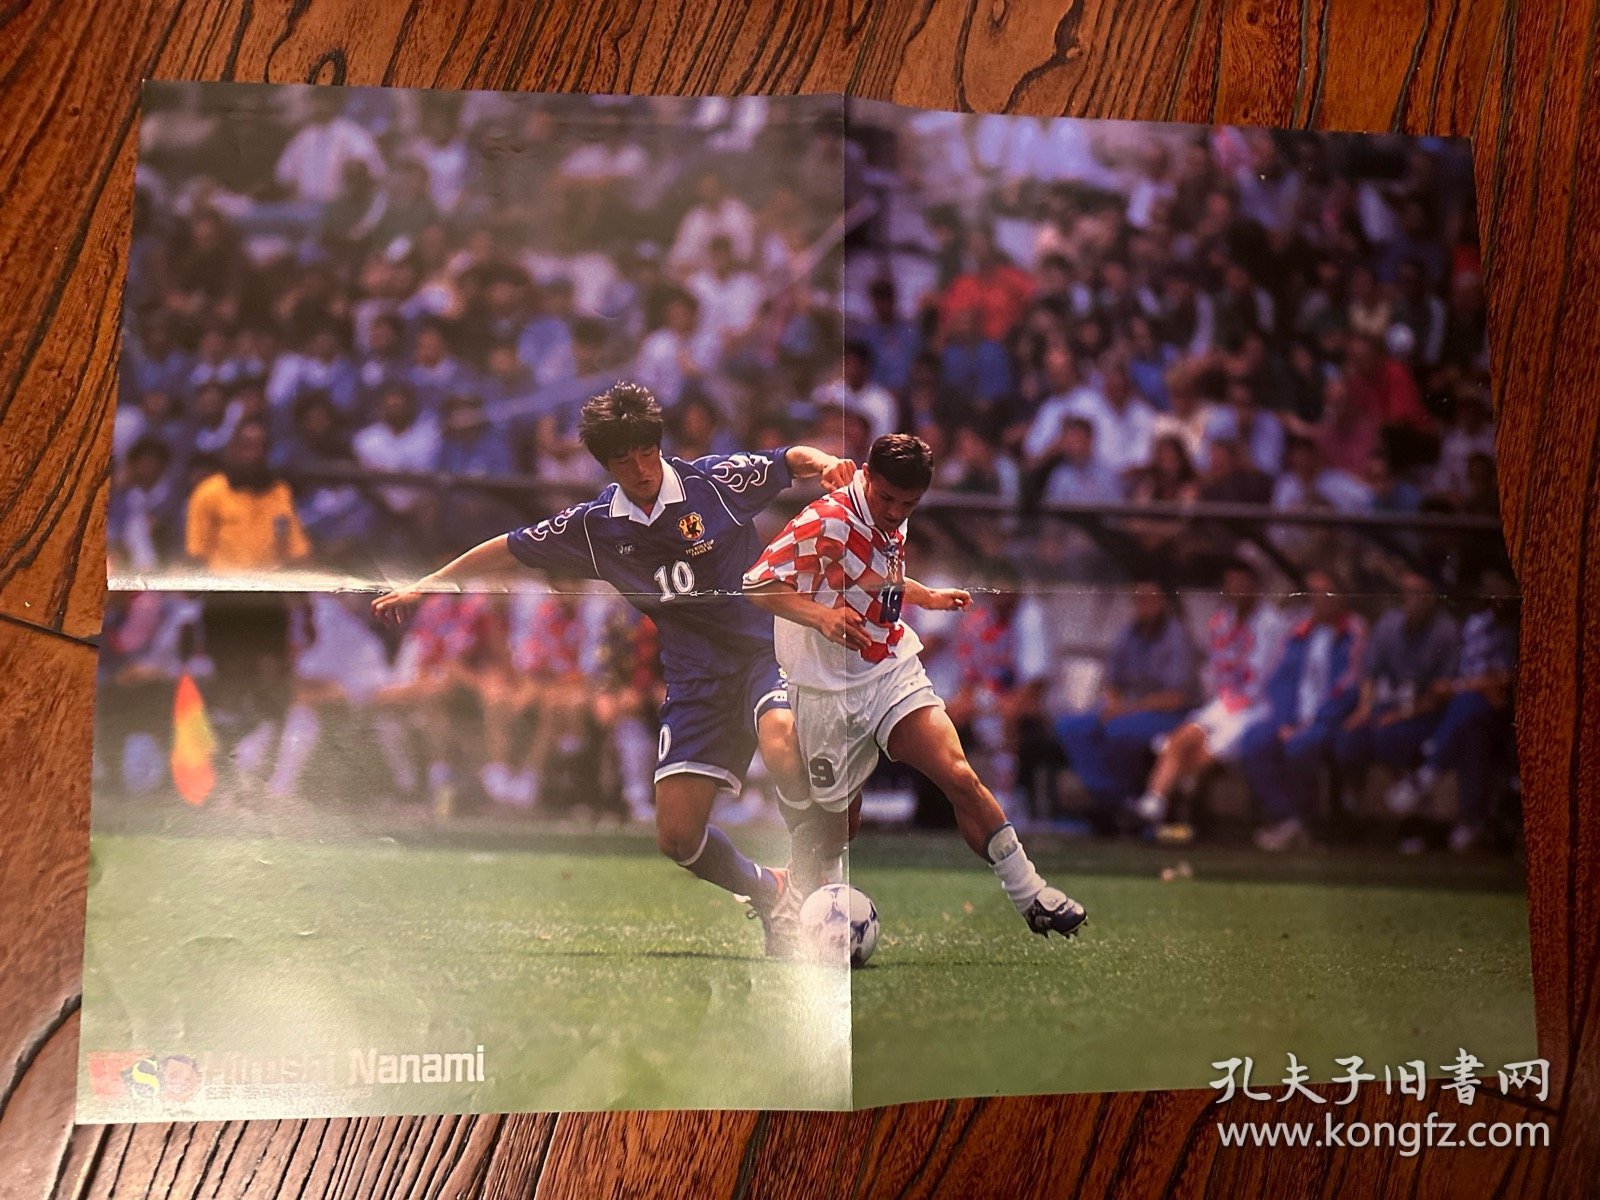 1998日本足球周刊文摘足球体育特刊 带法国世界杯部分比赛film写真内容日本《足球》杂志原版带欧洲杯带克罗地亚苏克双面大海报内容包邮